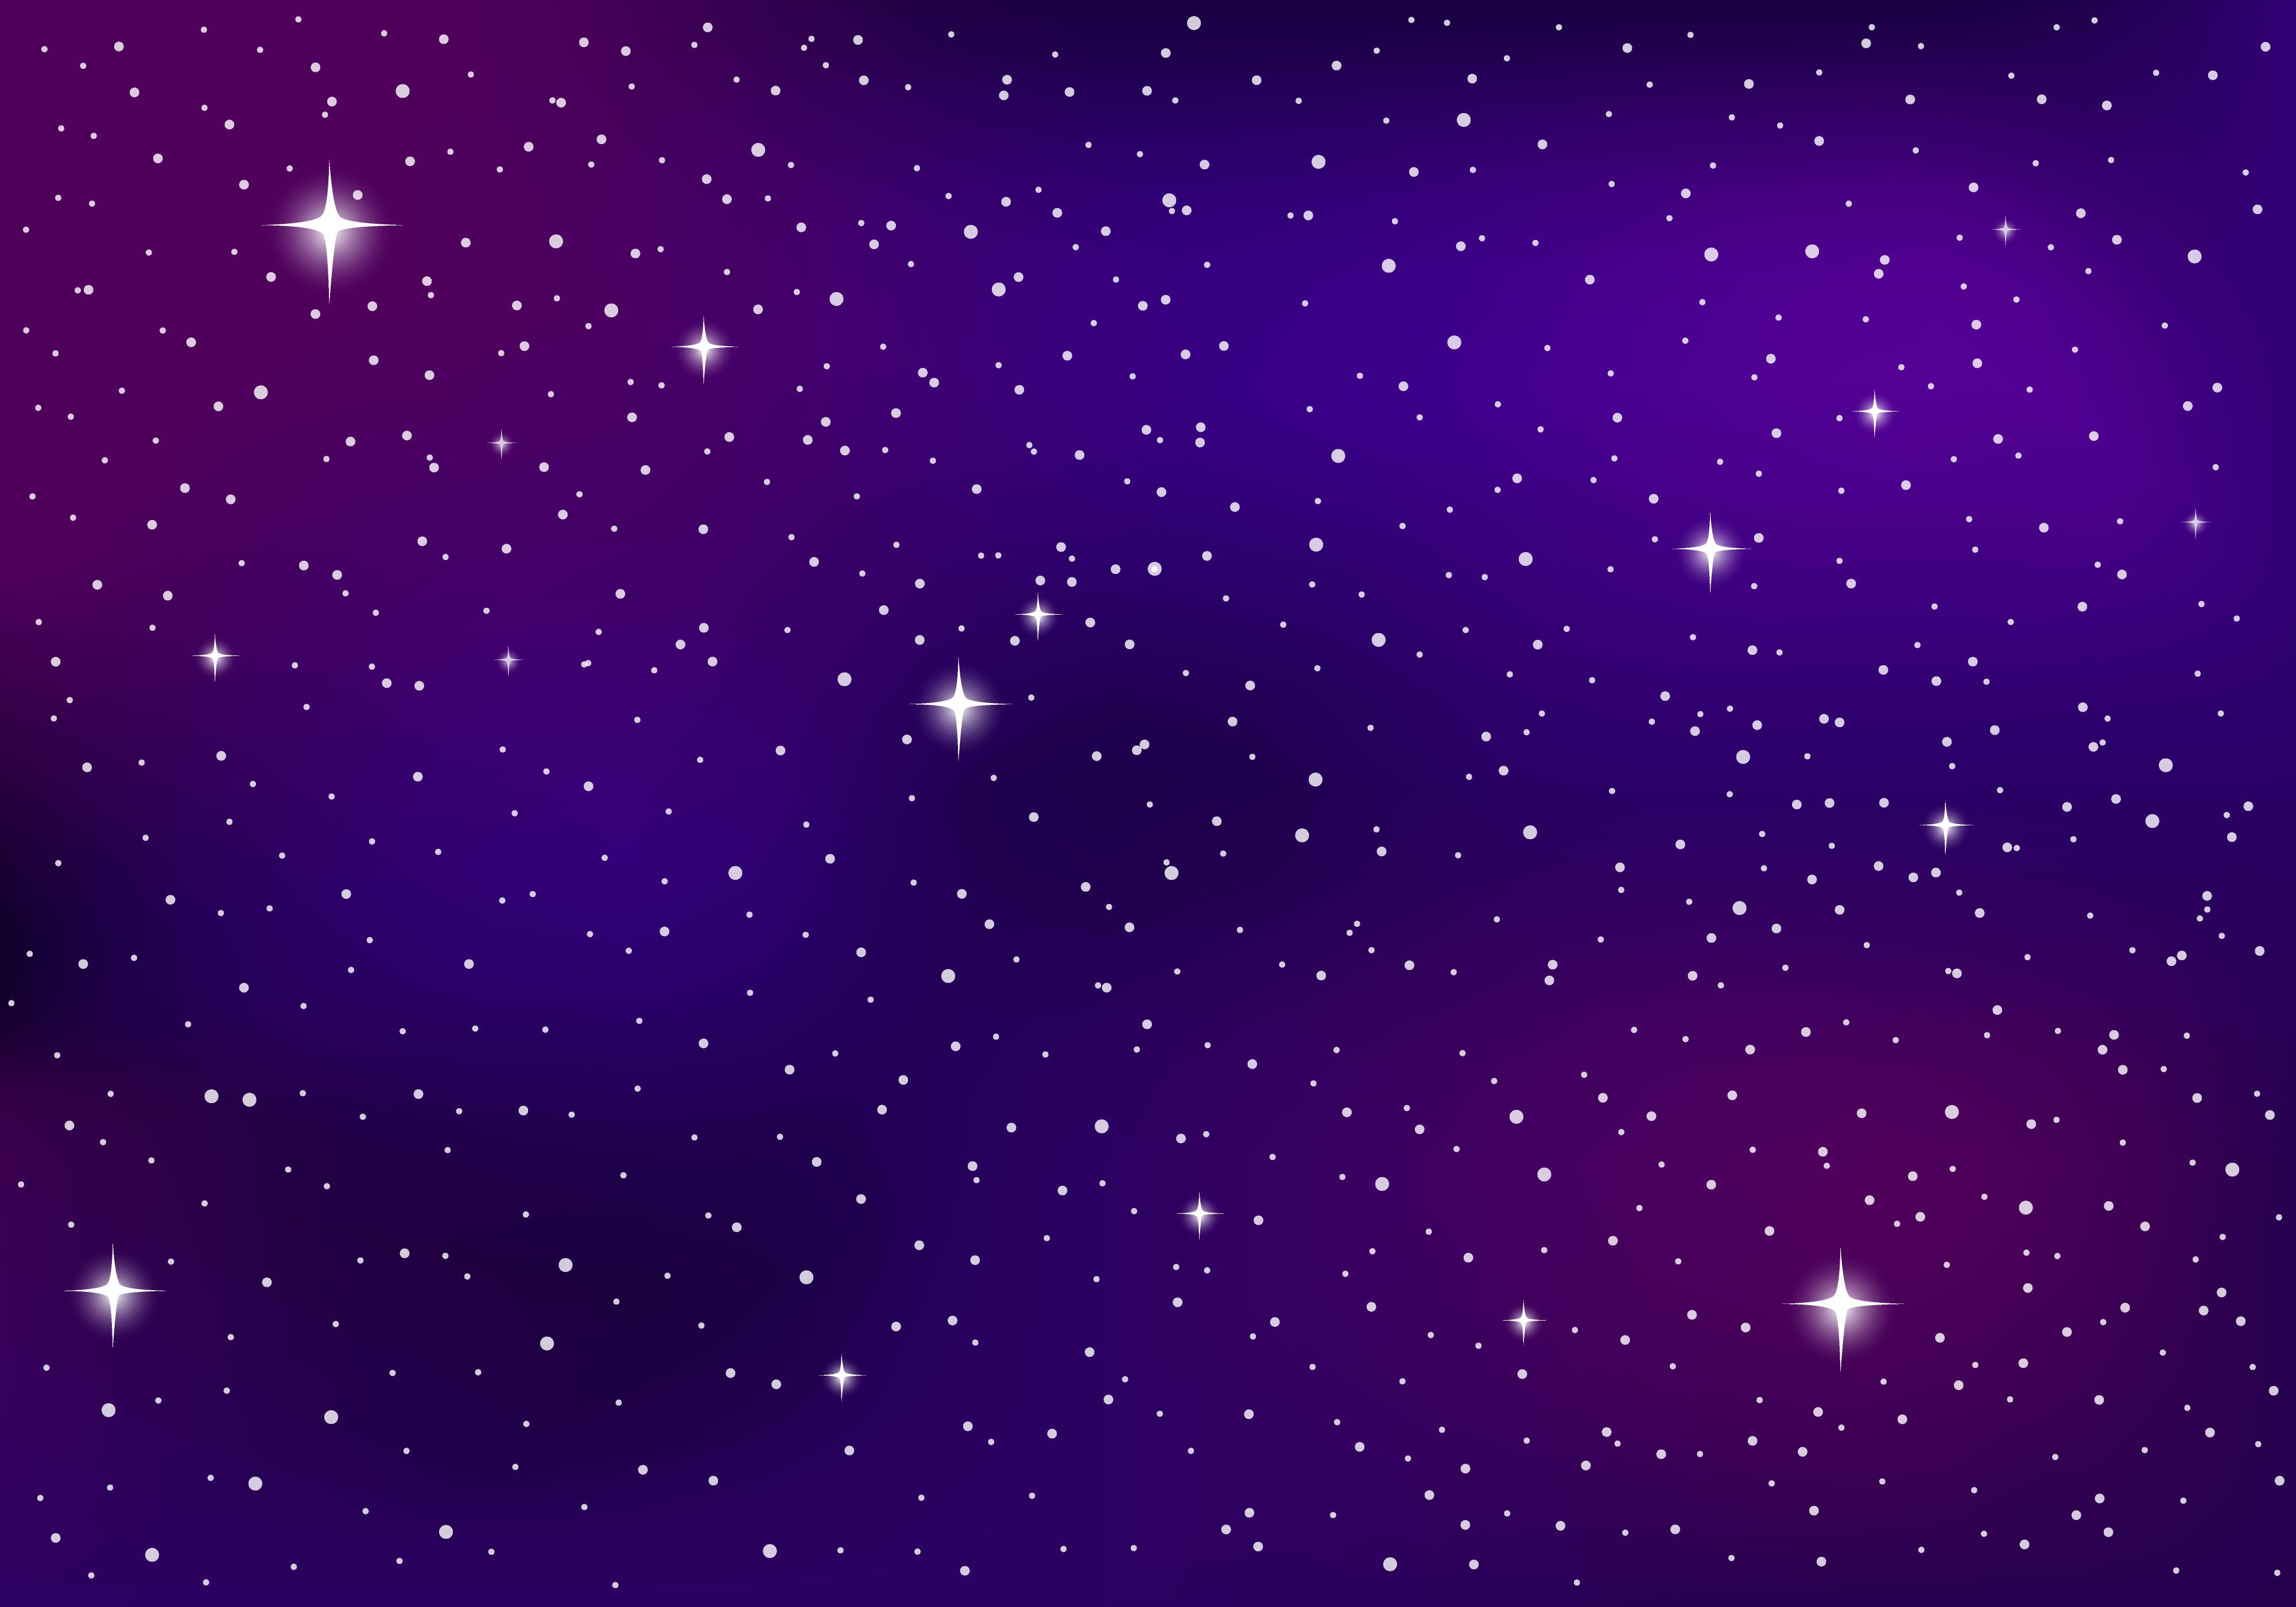 Картинки звездное небо космос для детей